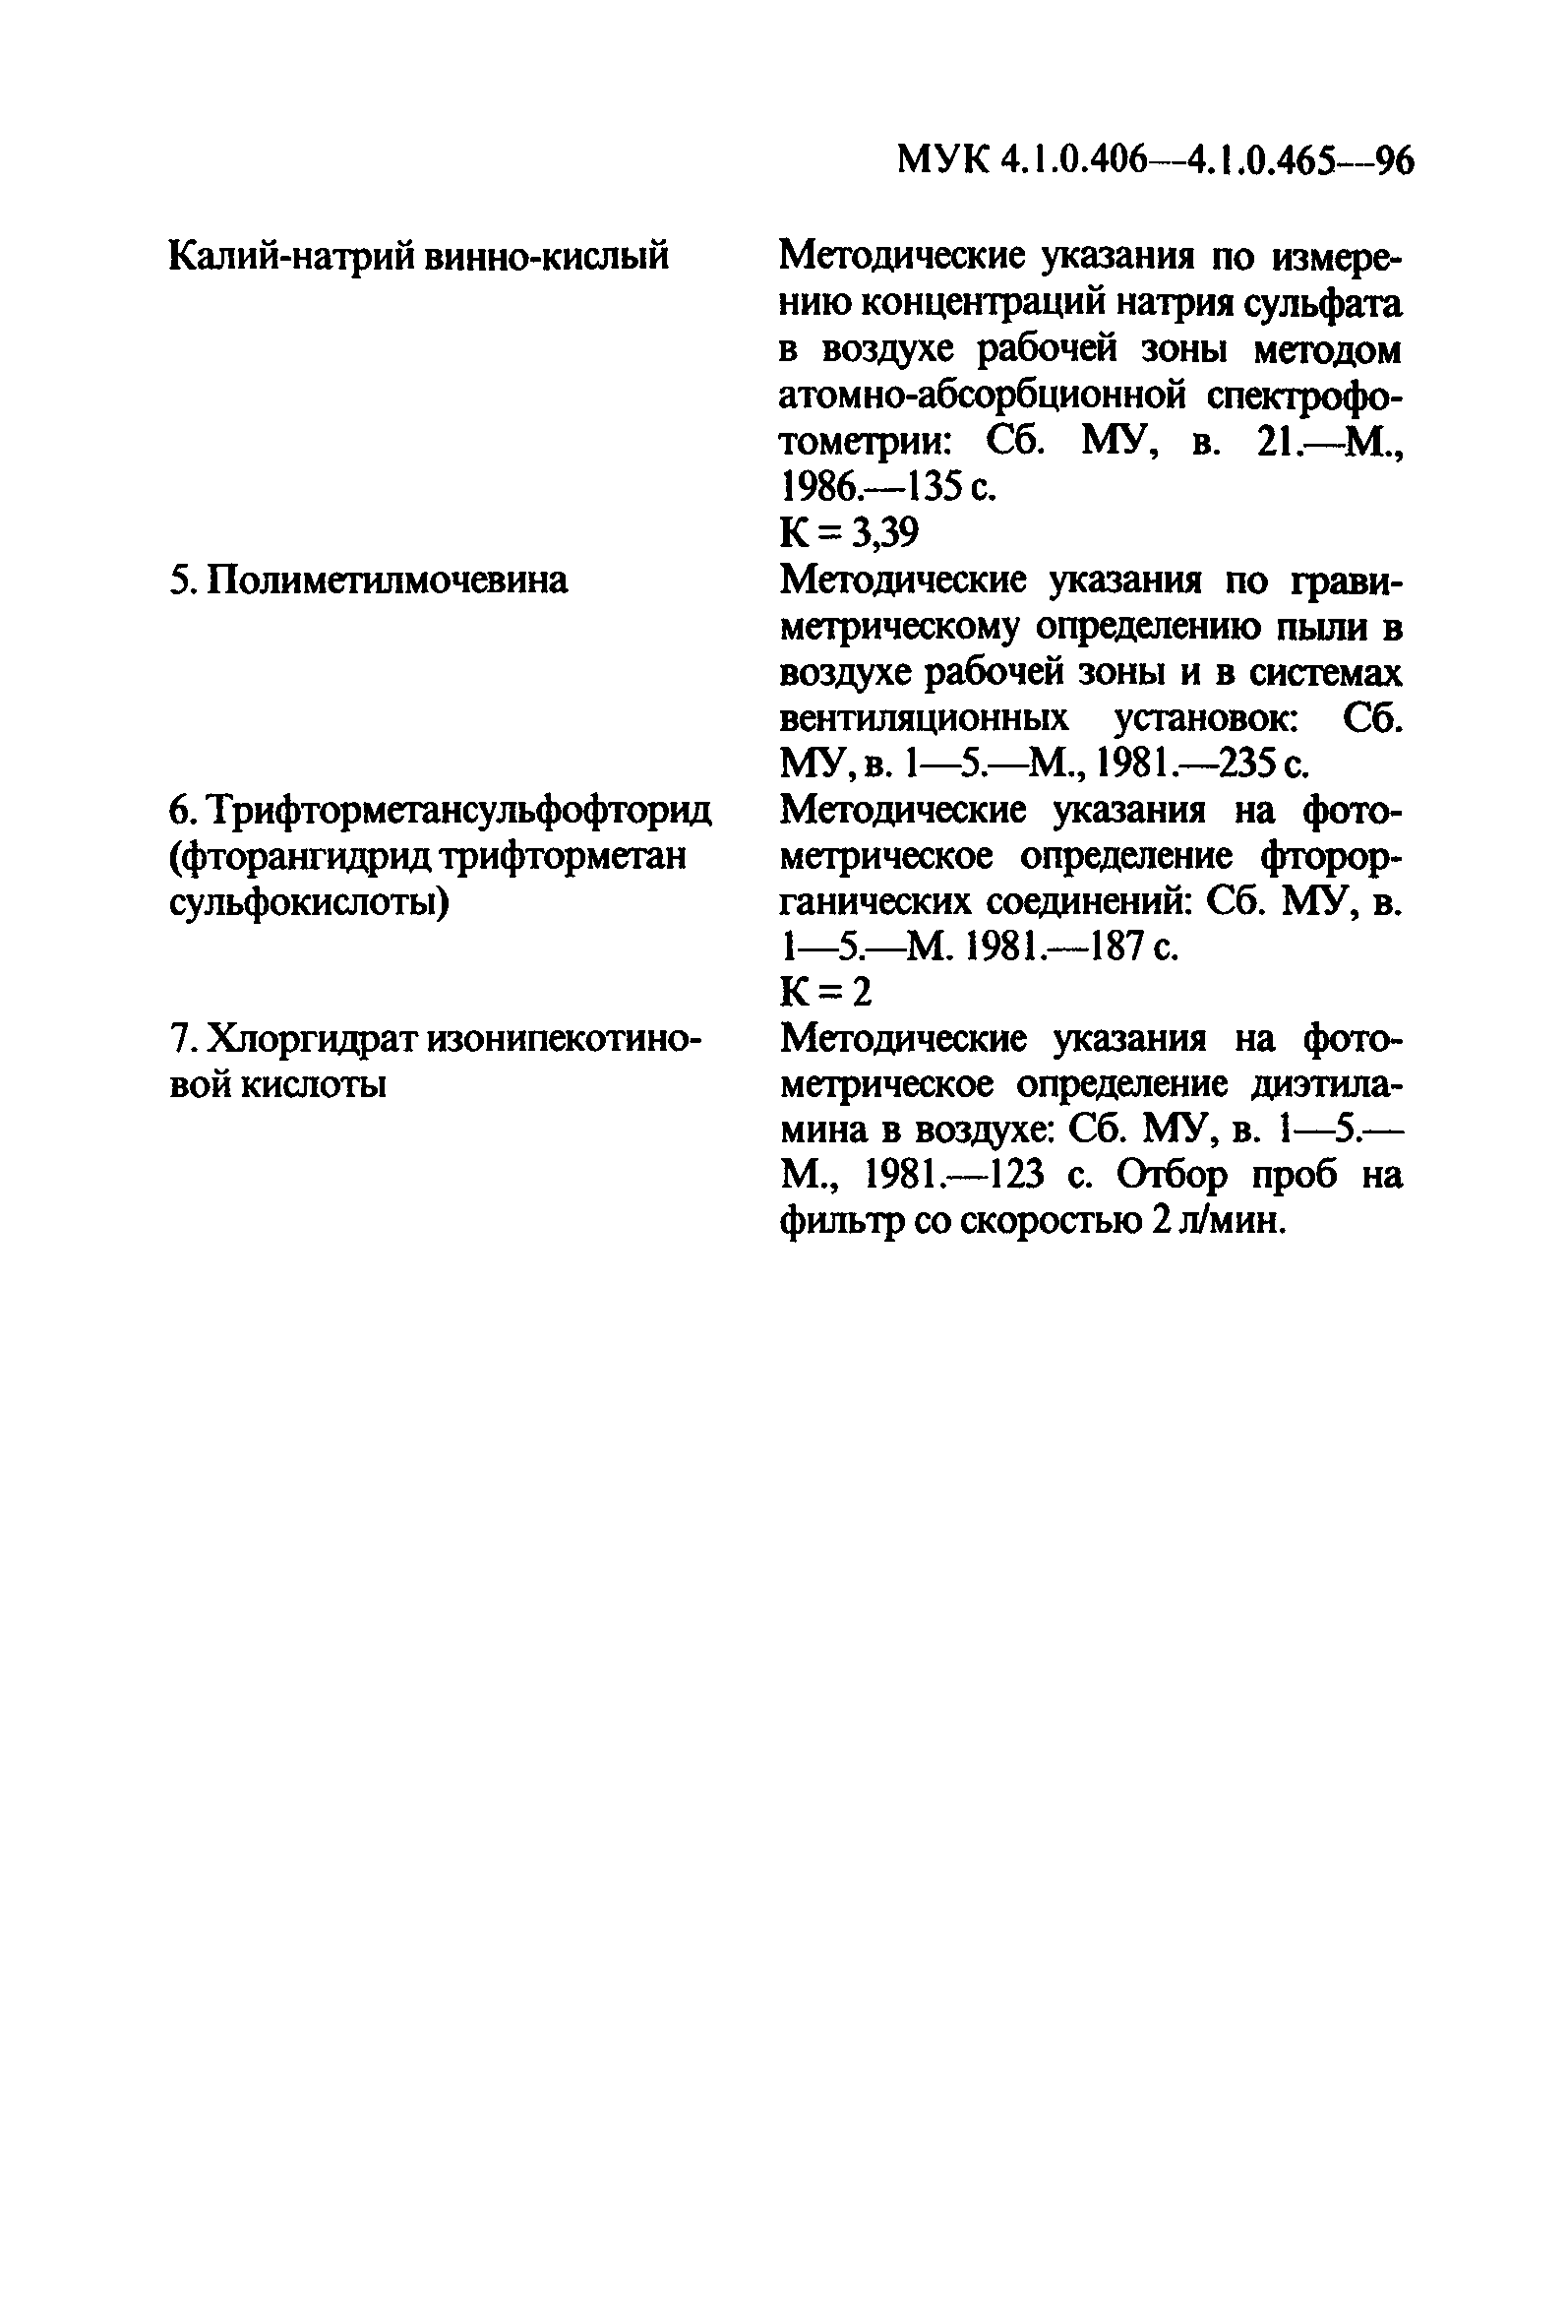 МУК 4.1.0.409-96